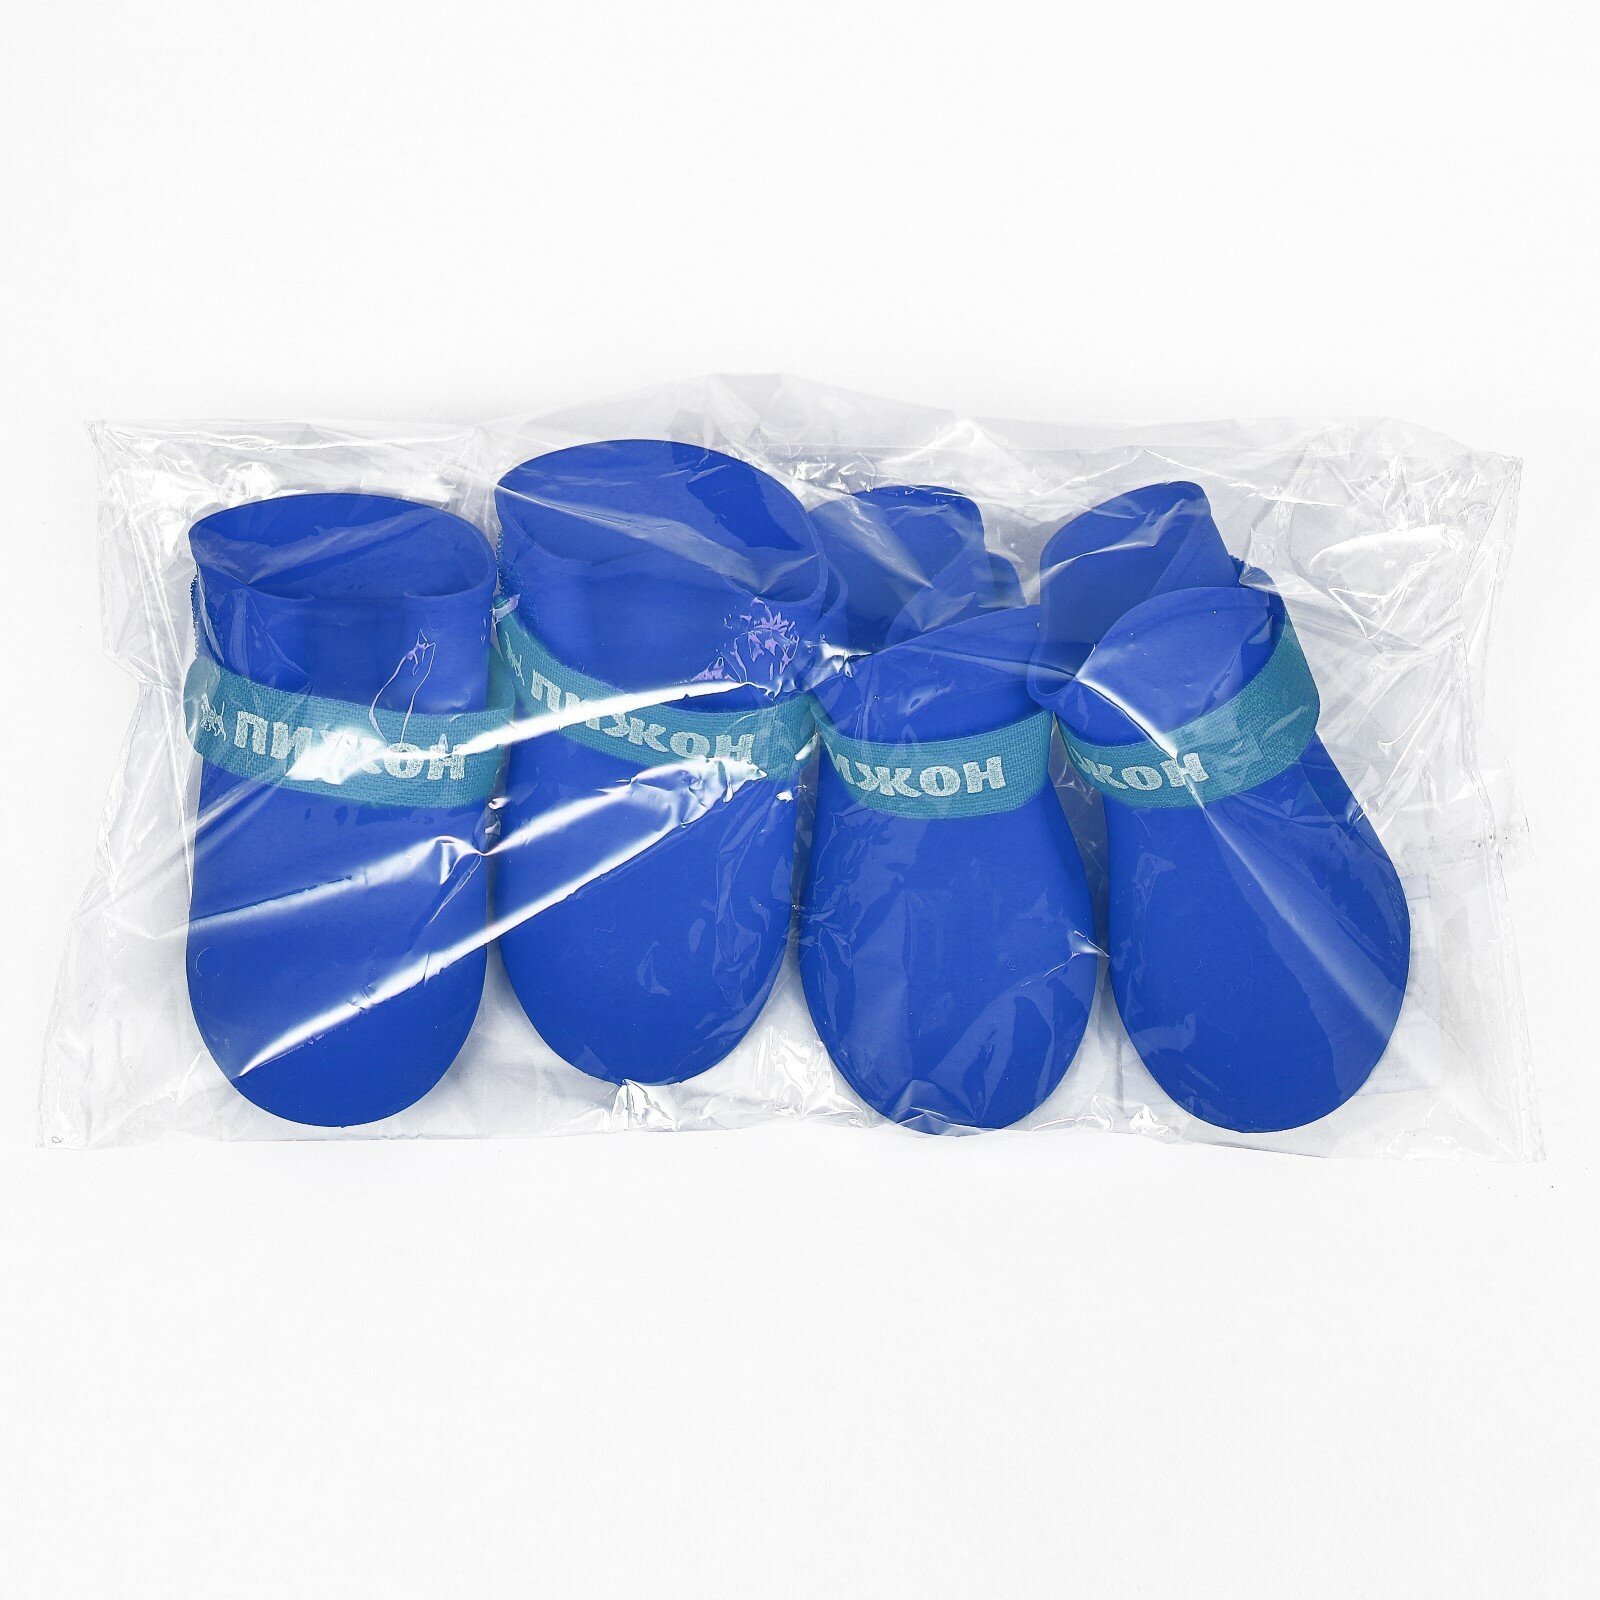 Сапоги резиновые Пижон, набор 4 шт, р-р S (подошва 4 Х 3 см), синие